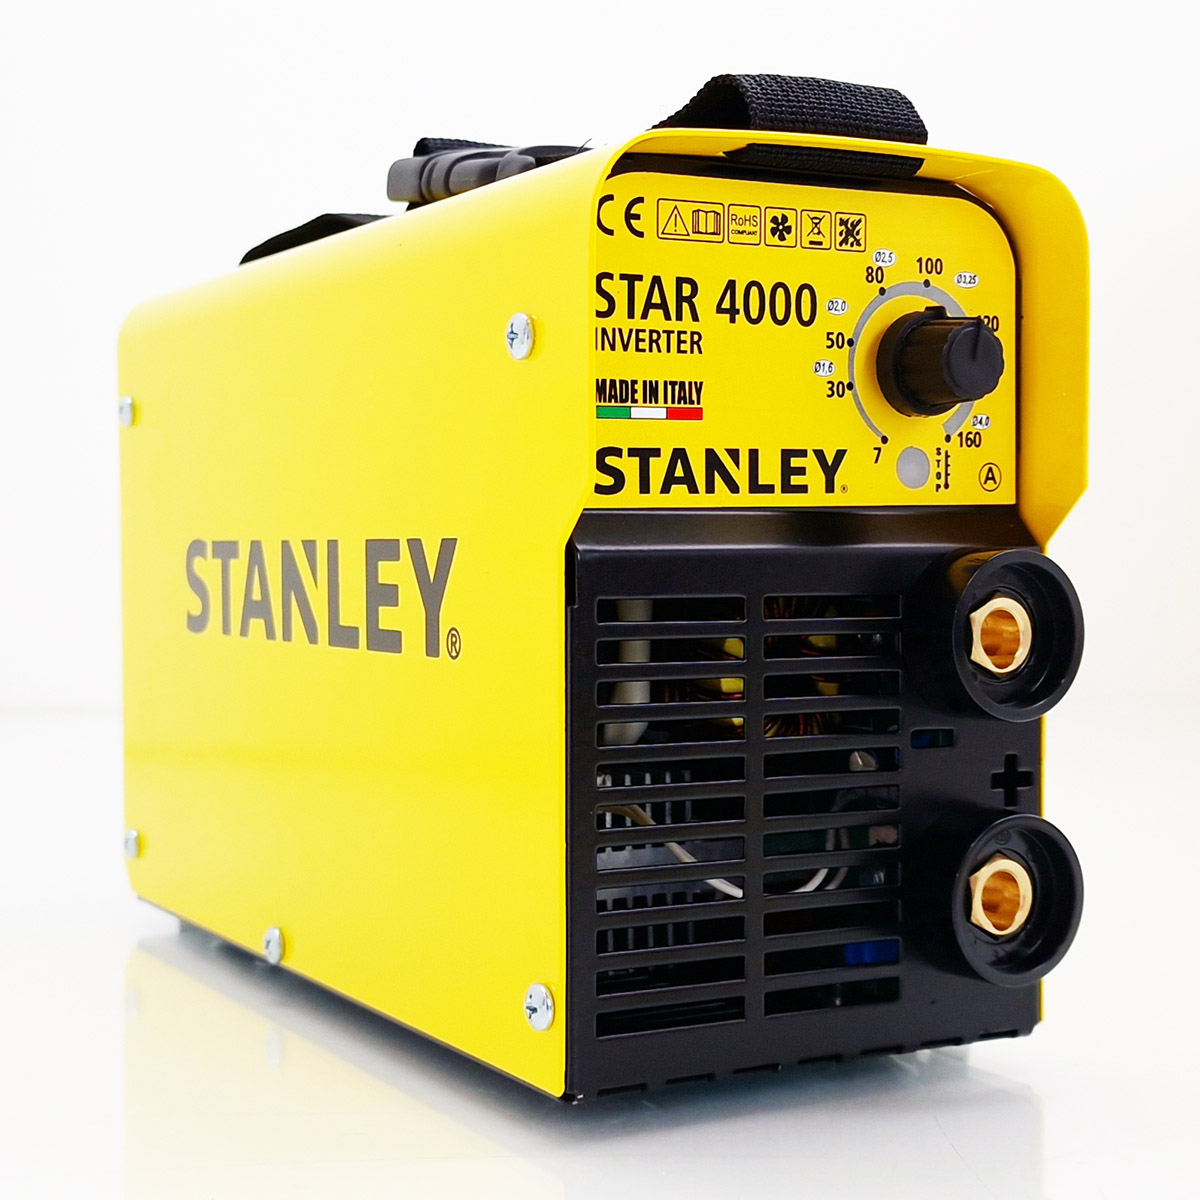 STANLEY STAR 4000 KIT INVERTER WELDER 160A